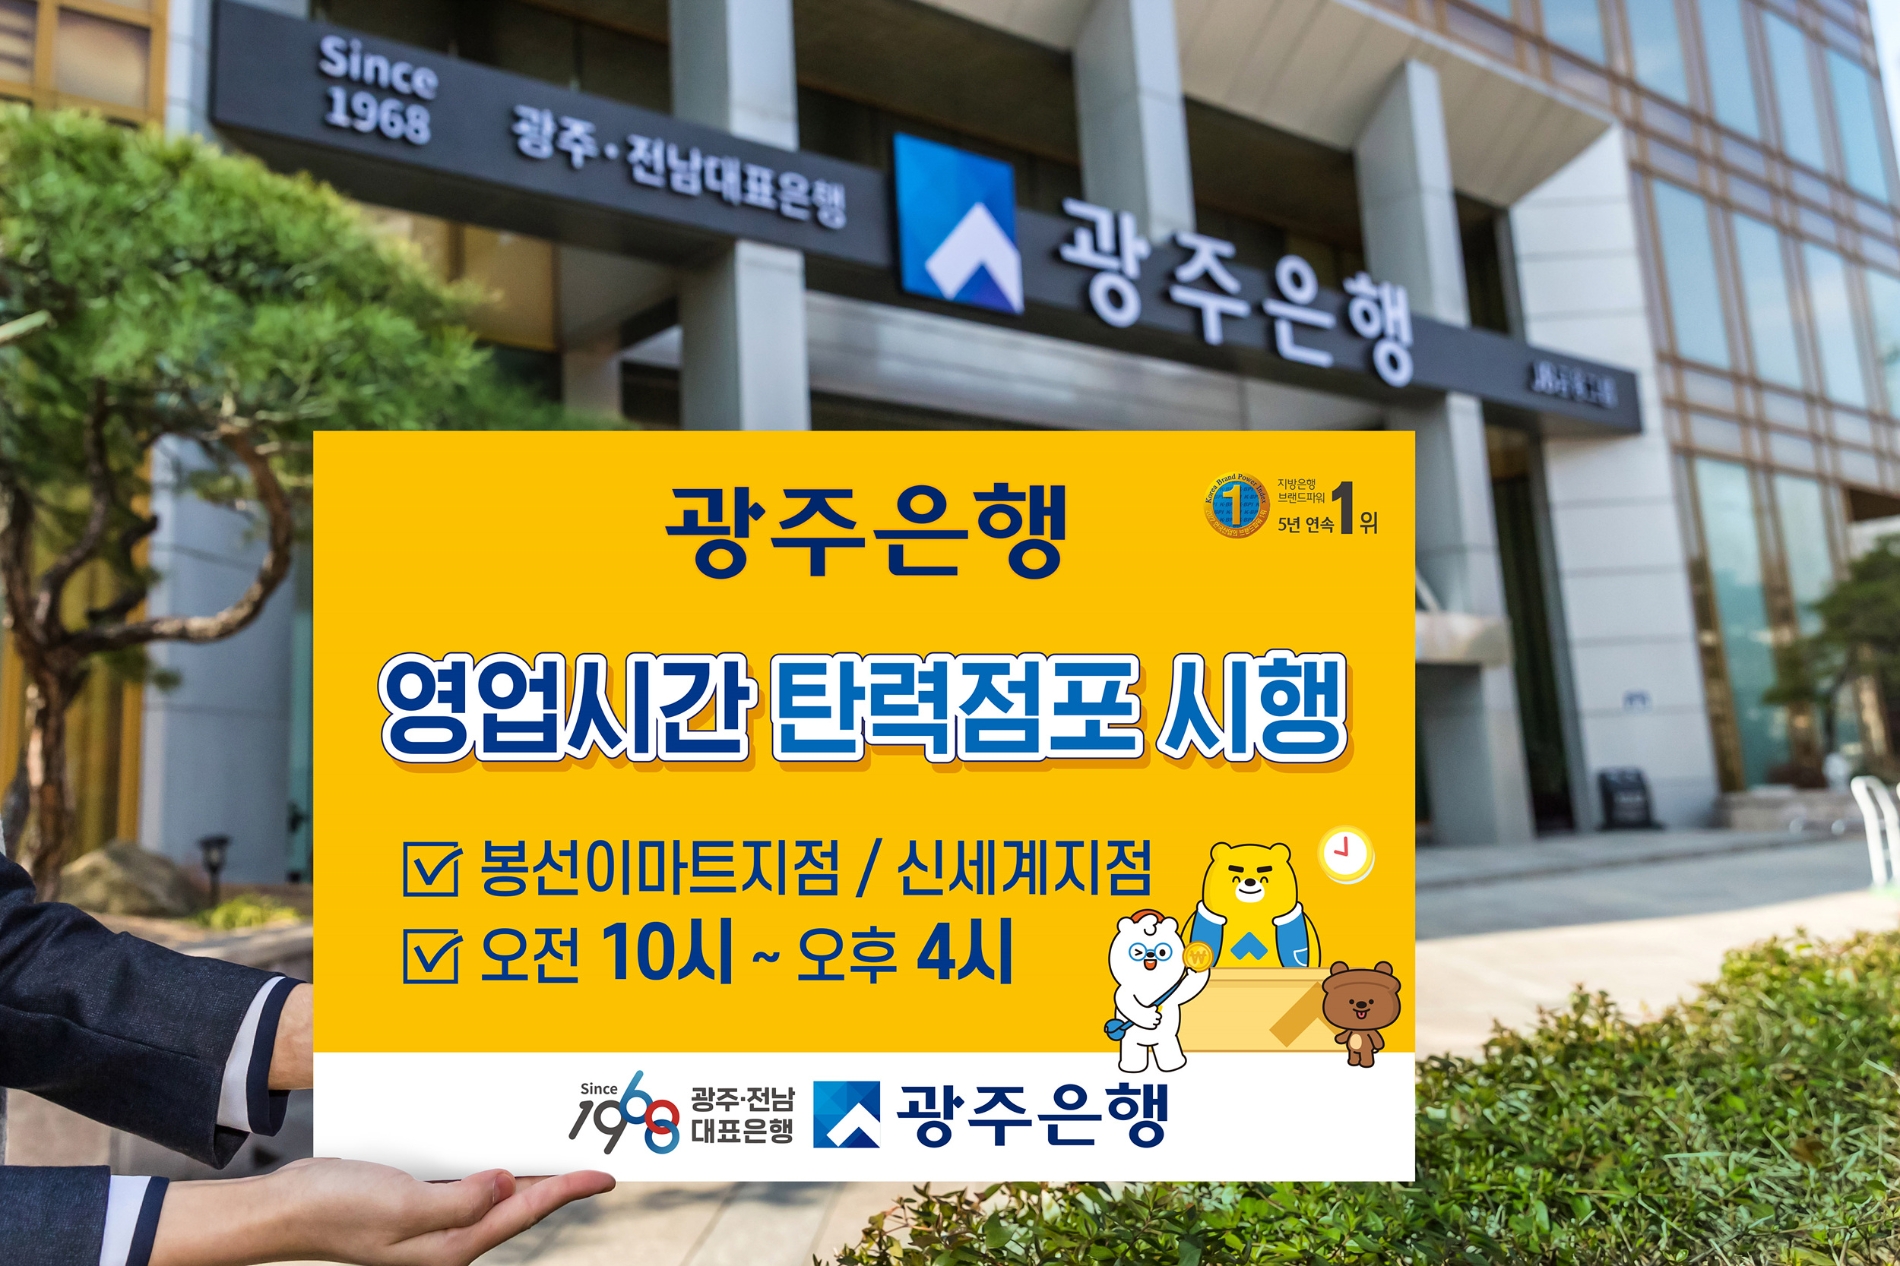 광주은행은 ‘영업시간 탄력점포’를 광주광역시 2개 영업점에서 운영한다. / 사진제공=광주은행